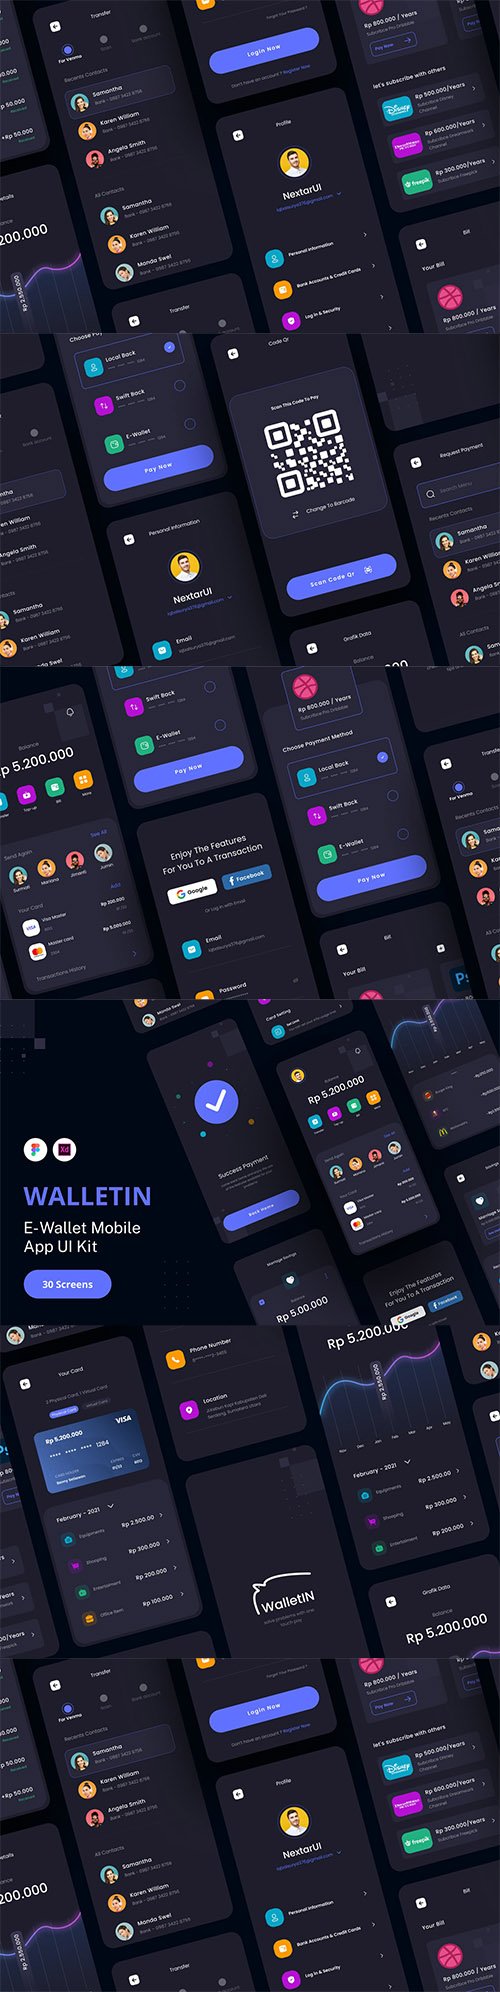 UI8 - WalletIn - E-Wallet App